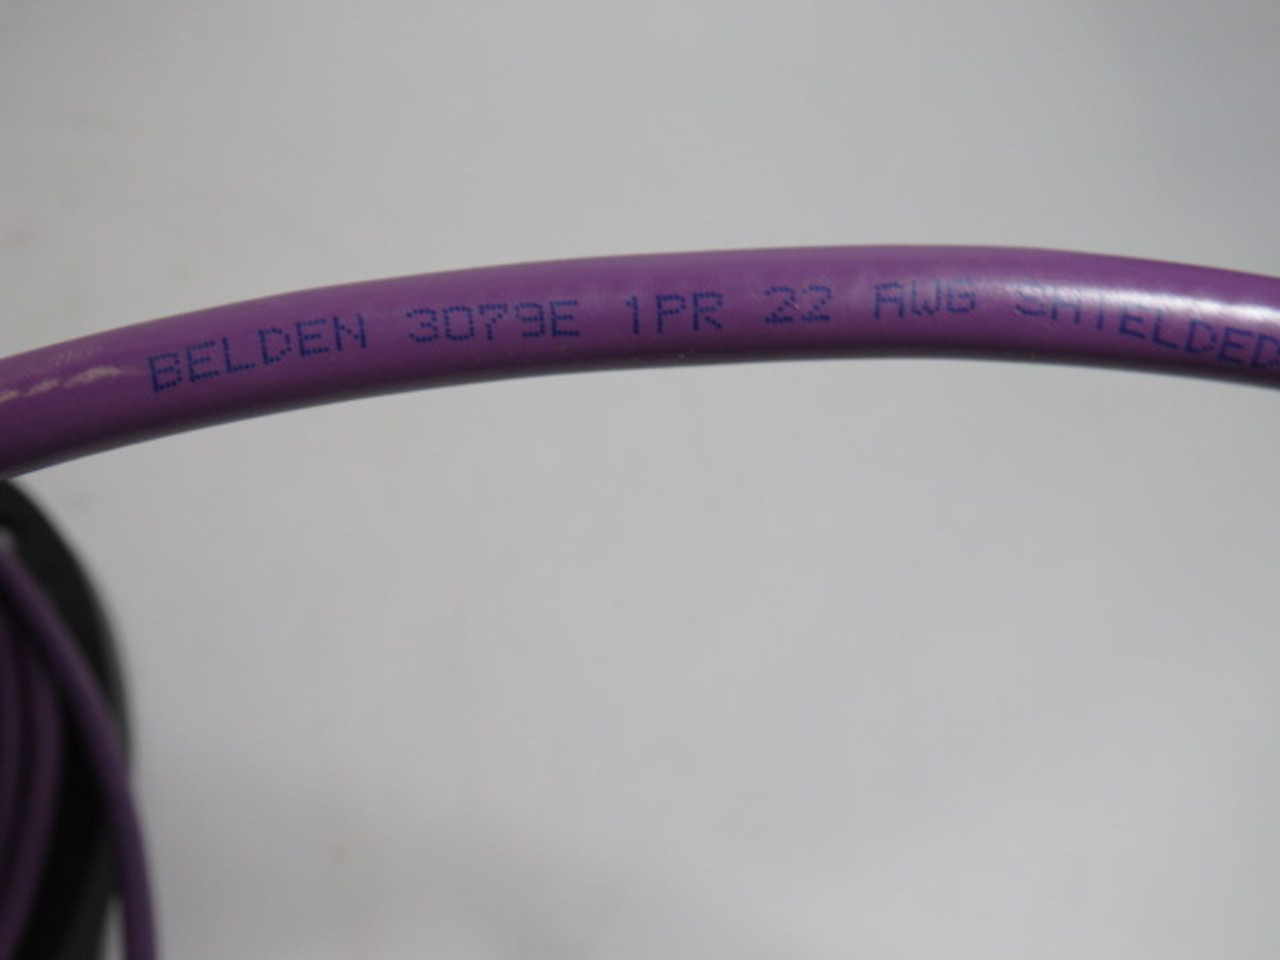 Belden 3079E HI-FLEX Cable 22 AWG 300V 242 Feet Long USED